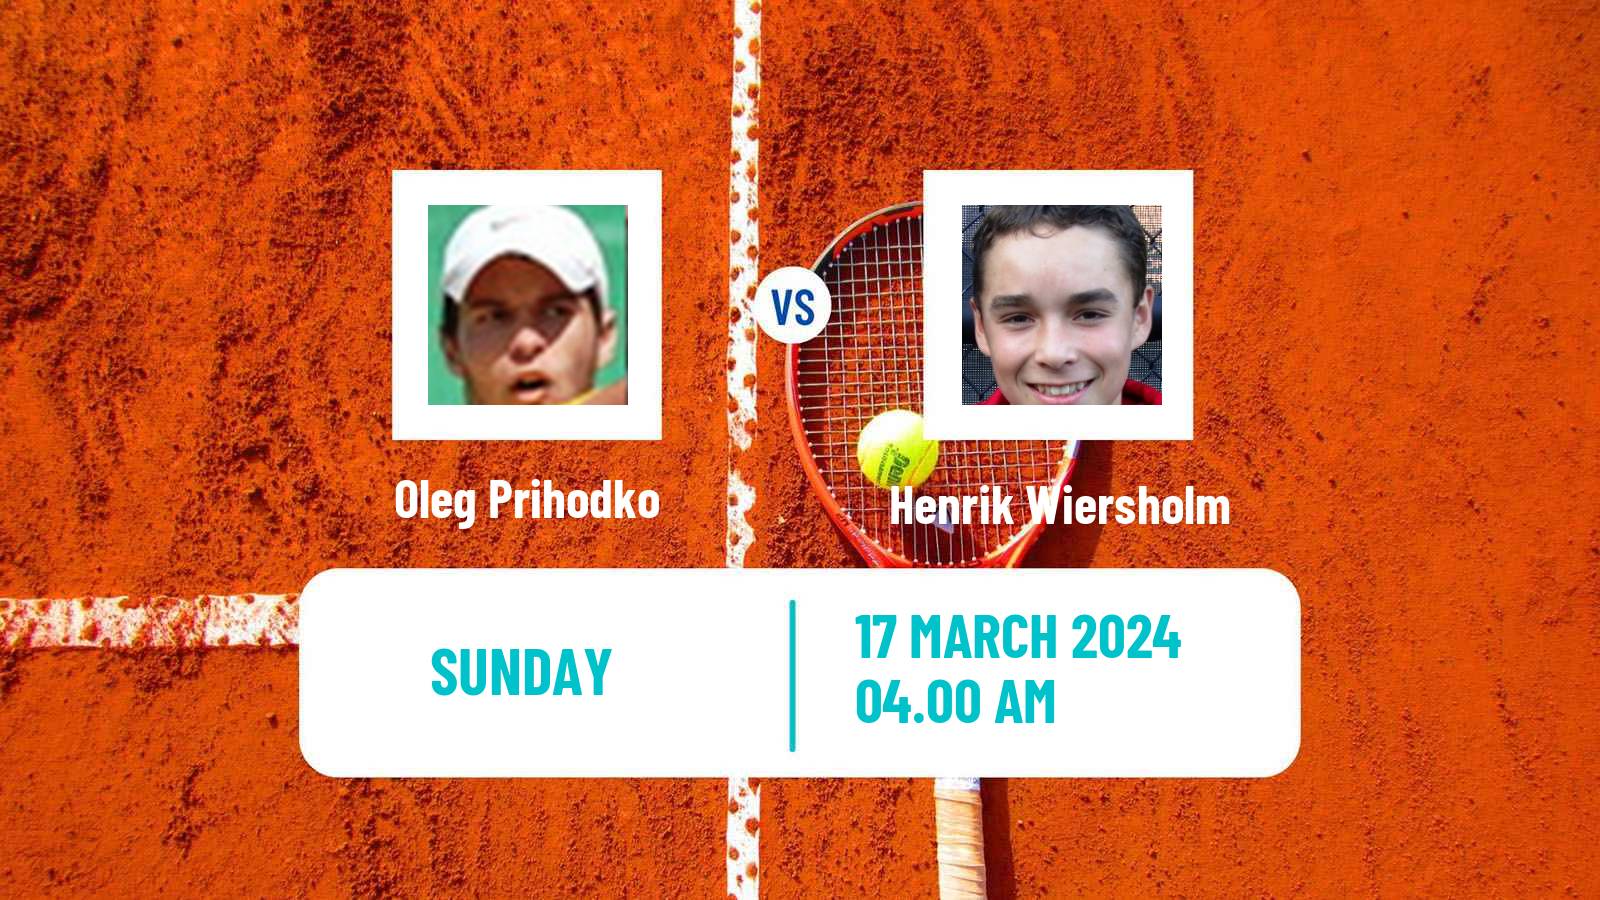 Tennis ITF M15 Heraklion 2 Men Oleg Prihodko - Henrik Wiersholm